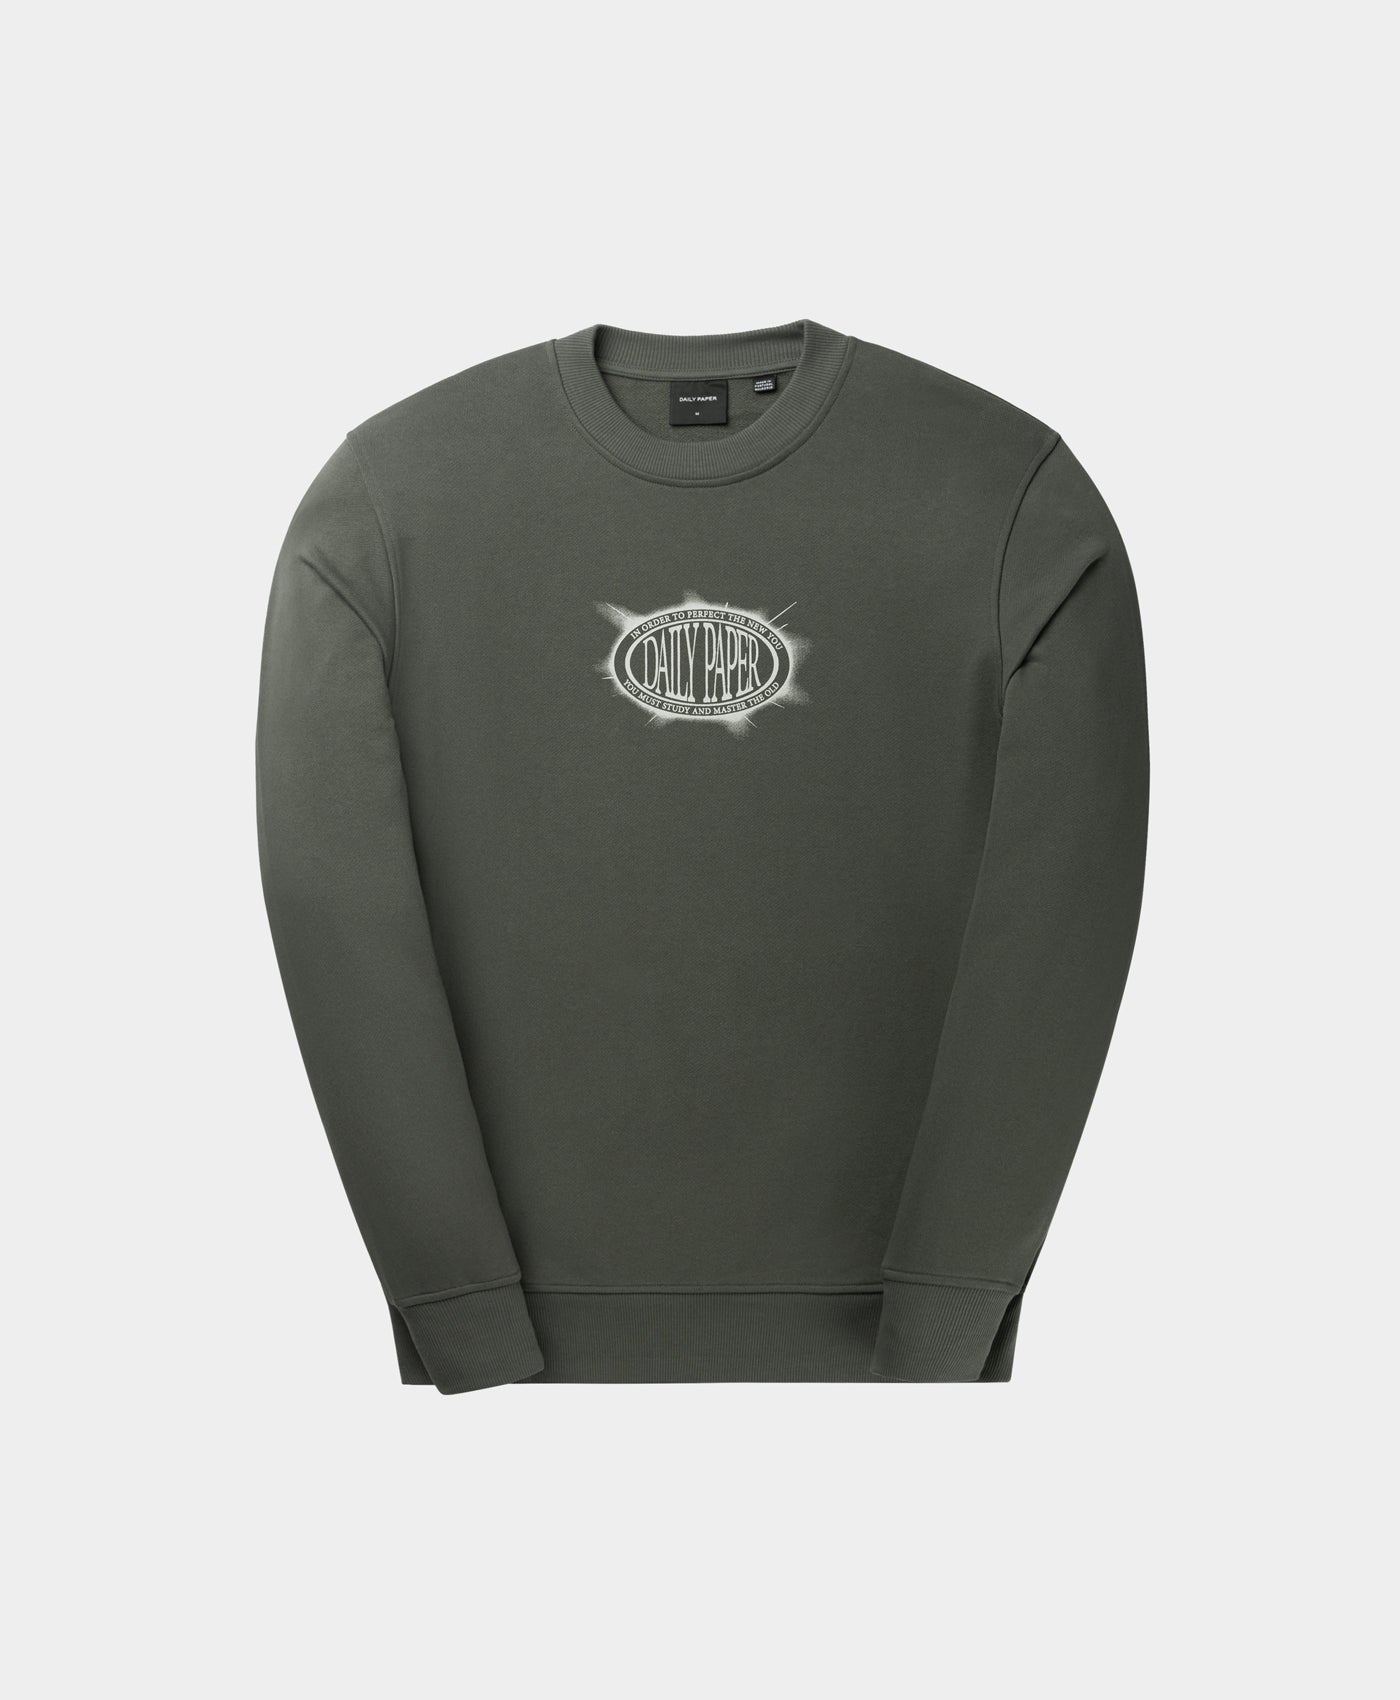 DP - Chimera Green Glow Sweater - Packshot - Front